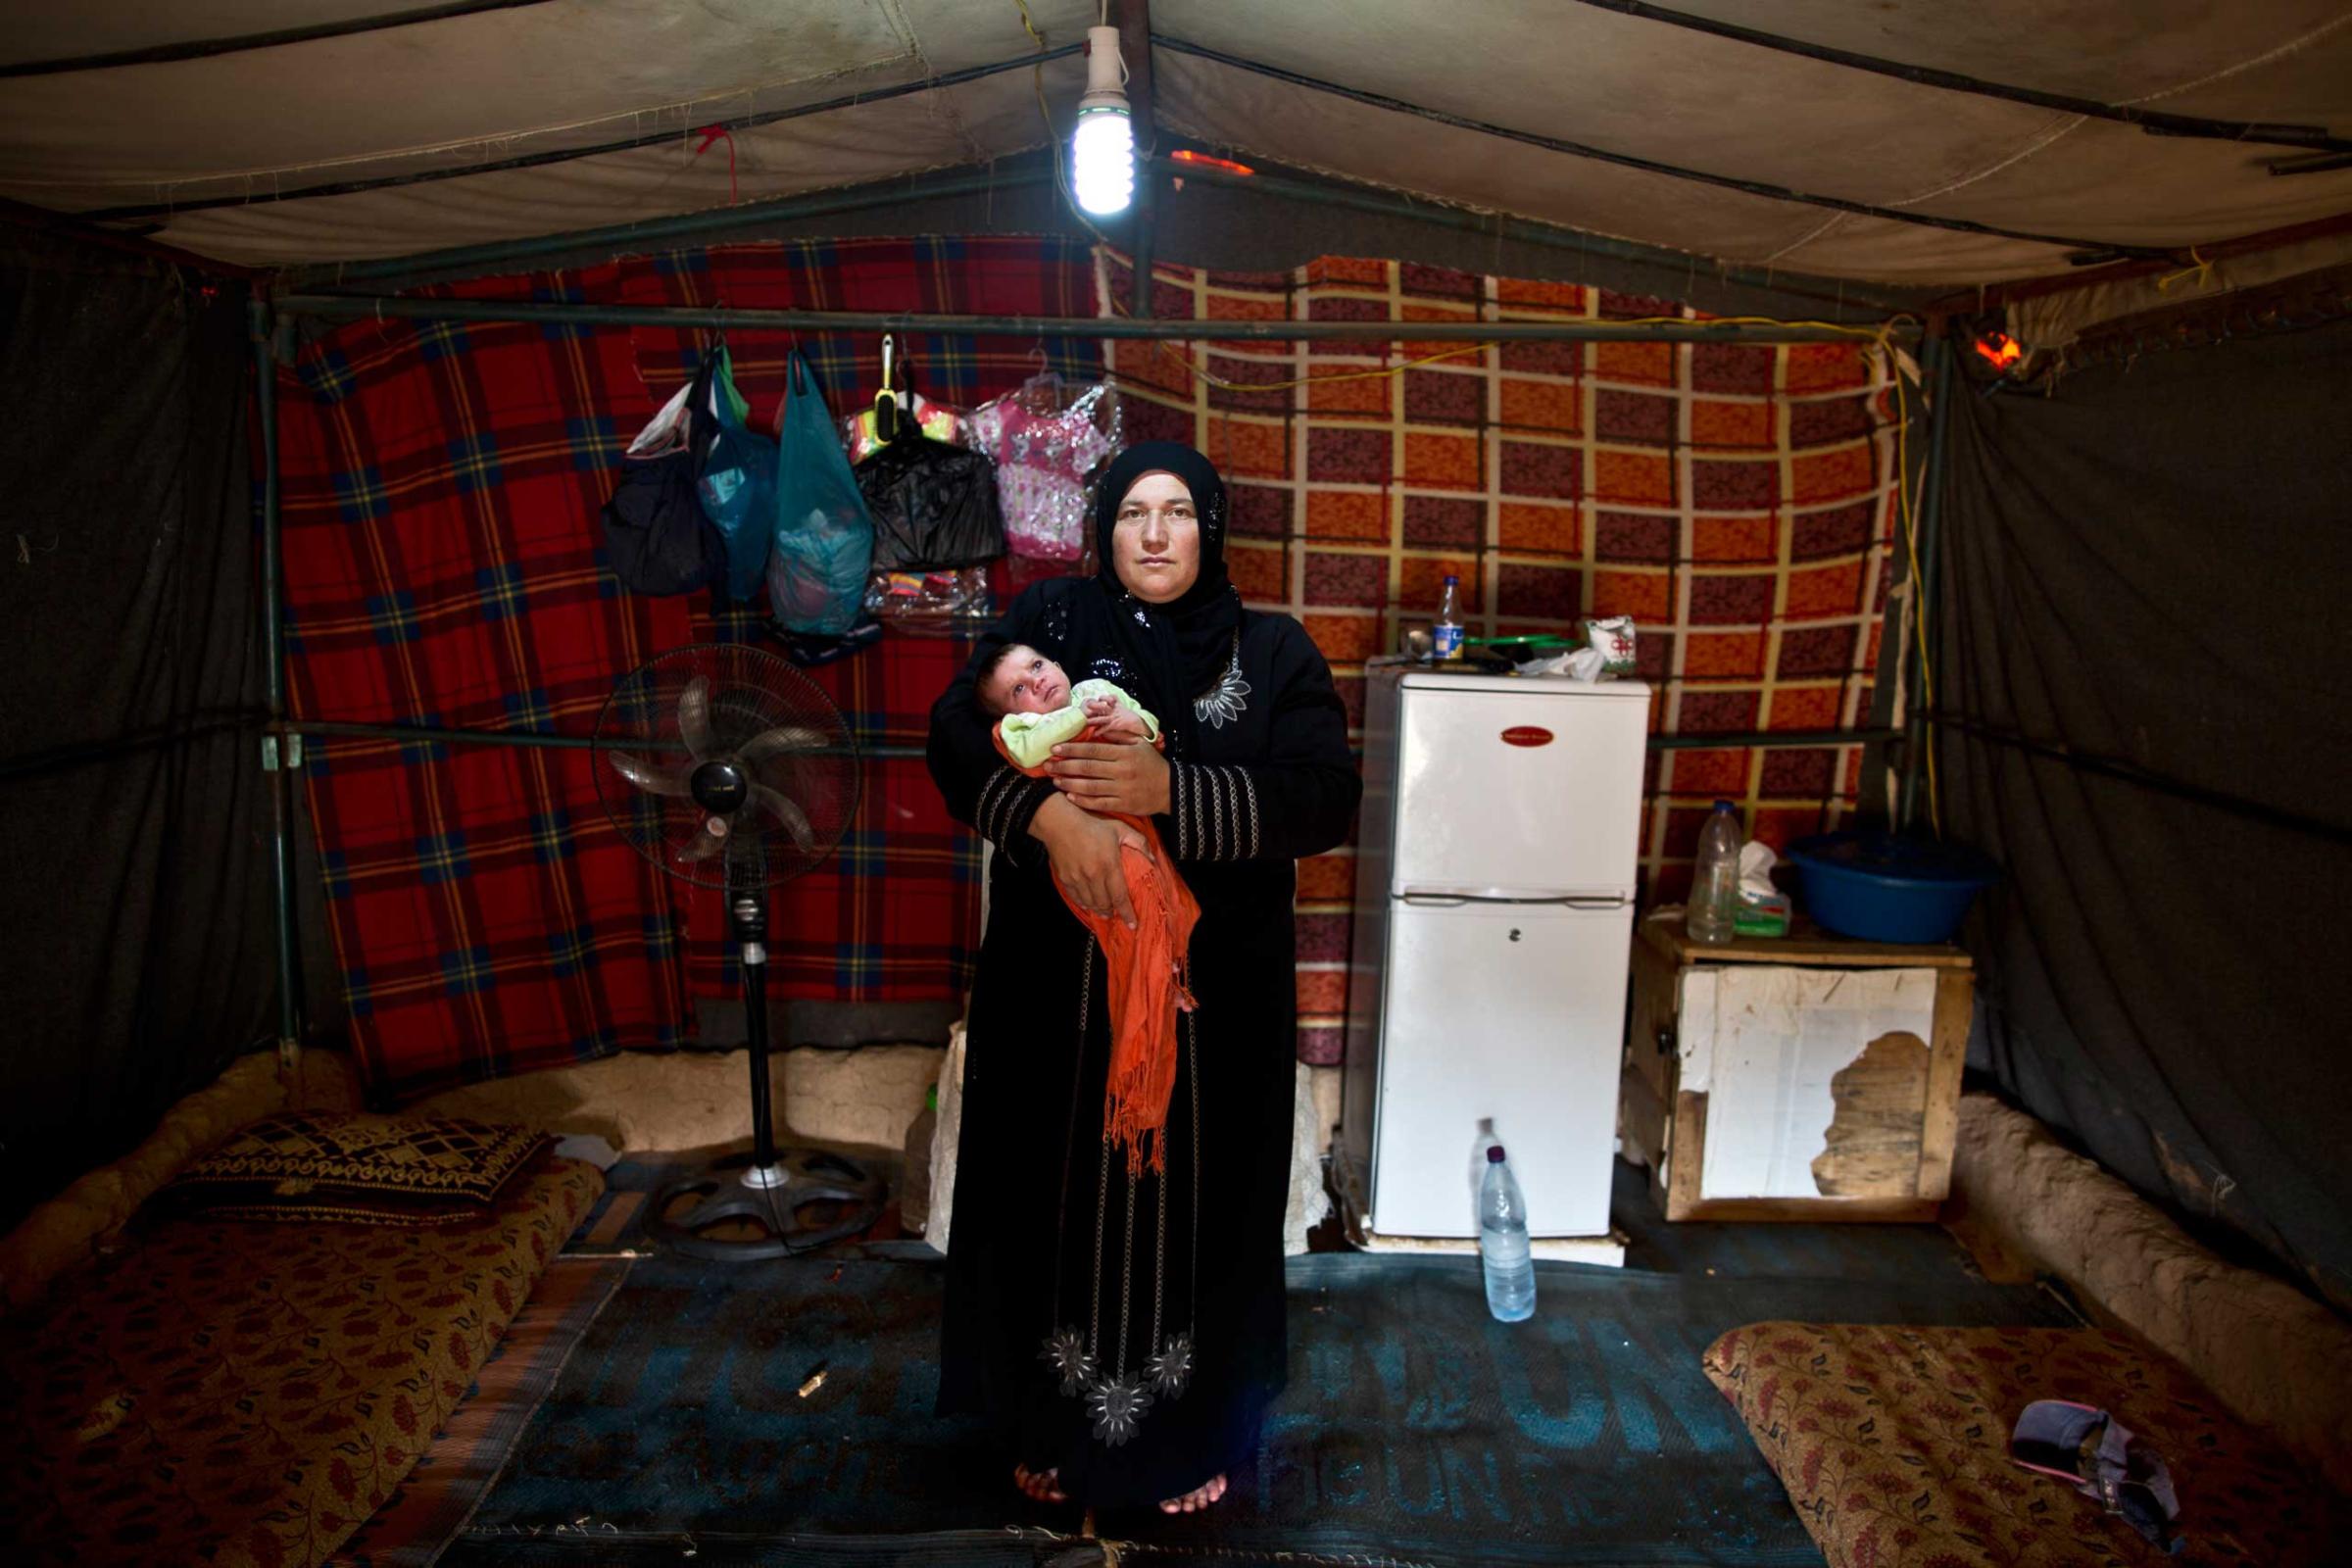 Syrian refugee mothers Jordan